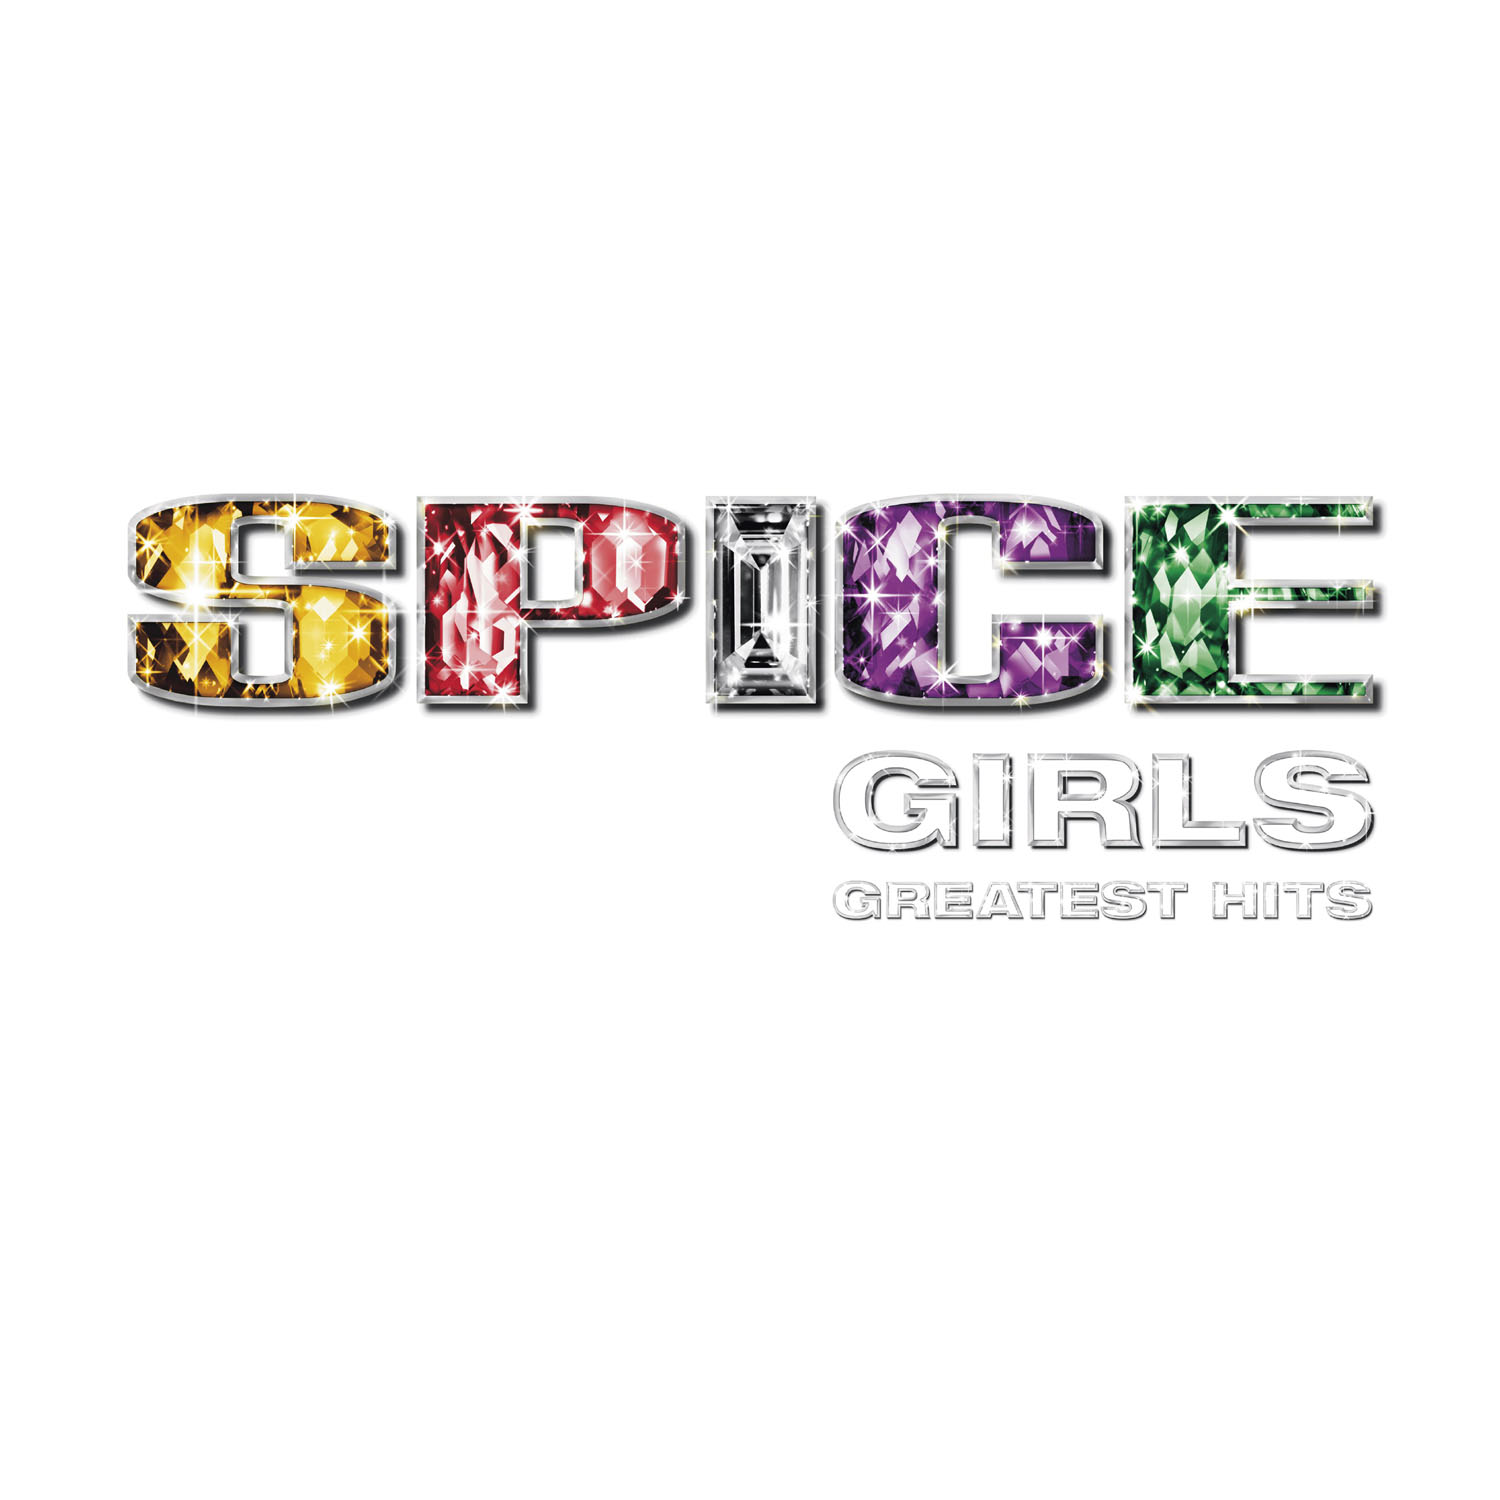 [Spice+Girls+Portada+Grandes+Exitos.jpg]